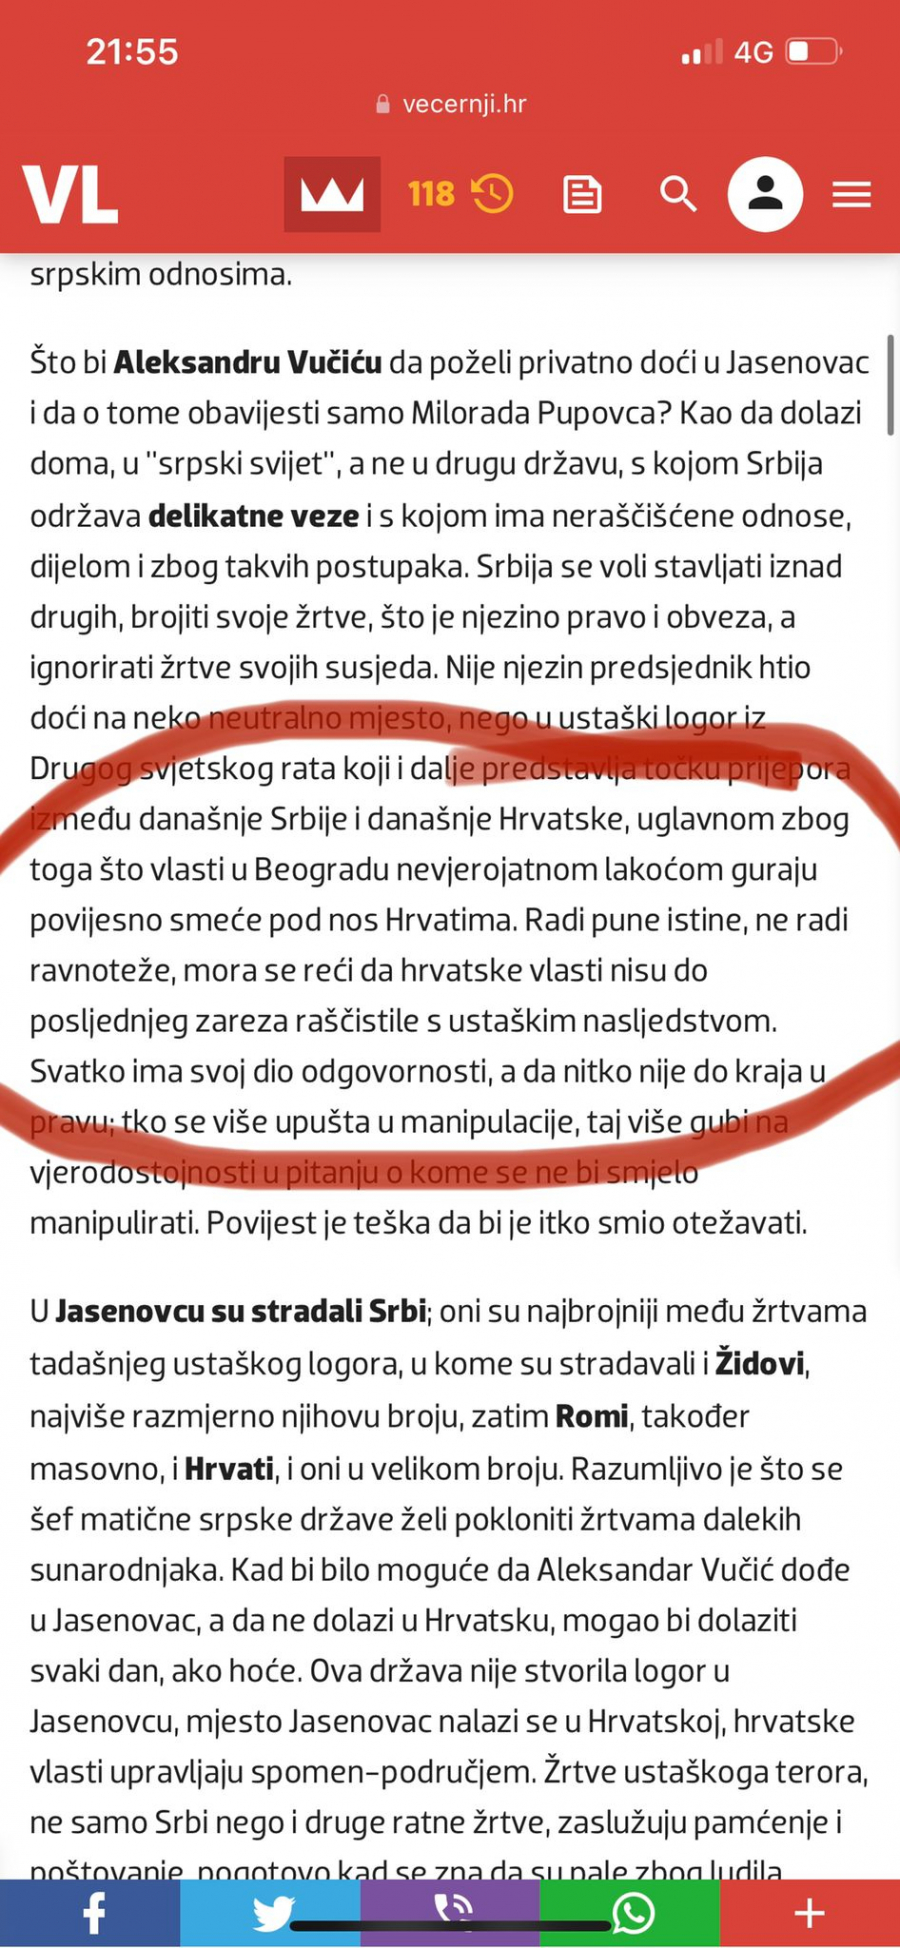 HRVATSKA DRŽAVA NIJE RASKRSTILA SA USTAŠTVOM! Hrvatski novinar hteo da udari na Vučića i Srbiju, ali mu se u jednoj rečenici omakla cela istina!